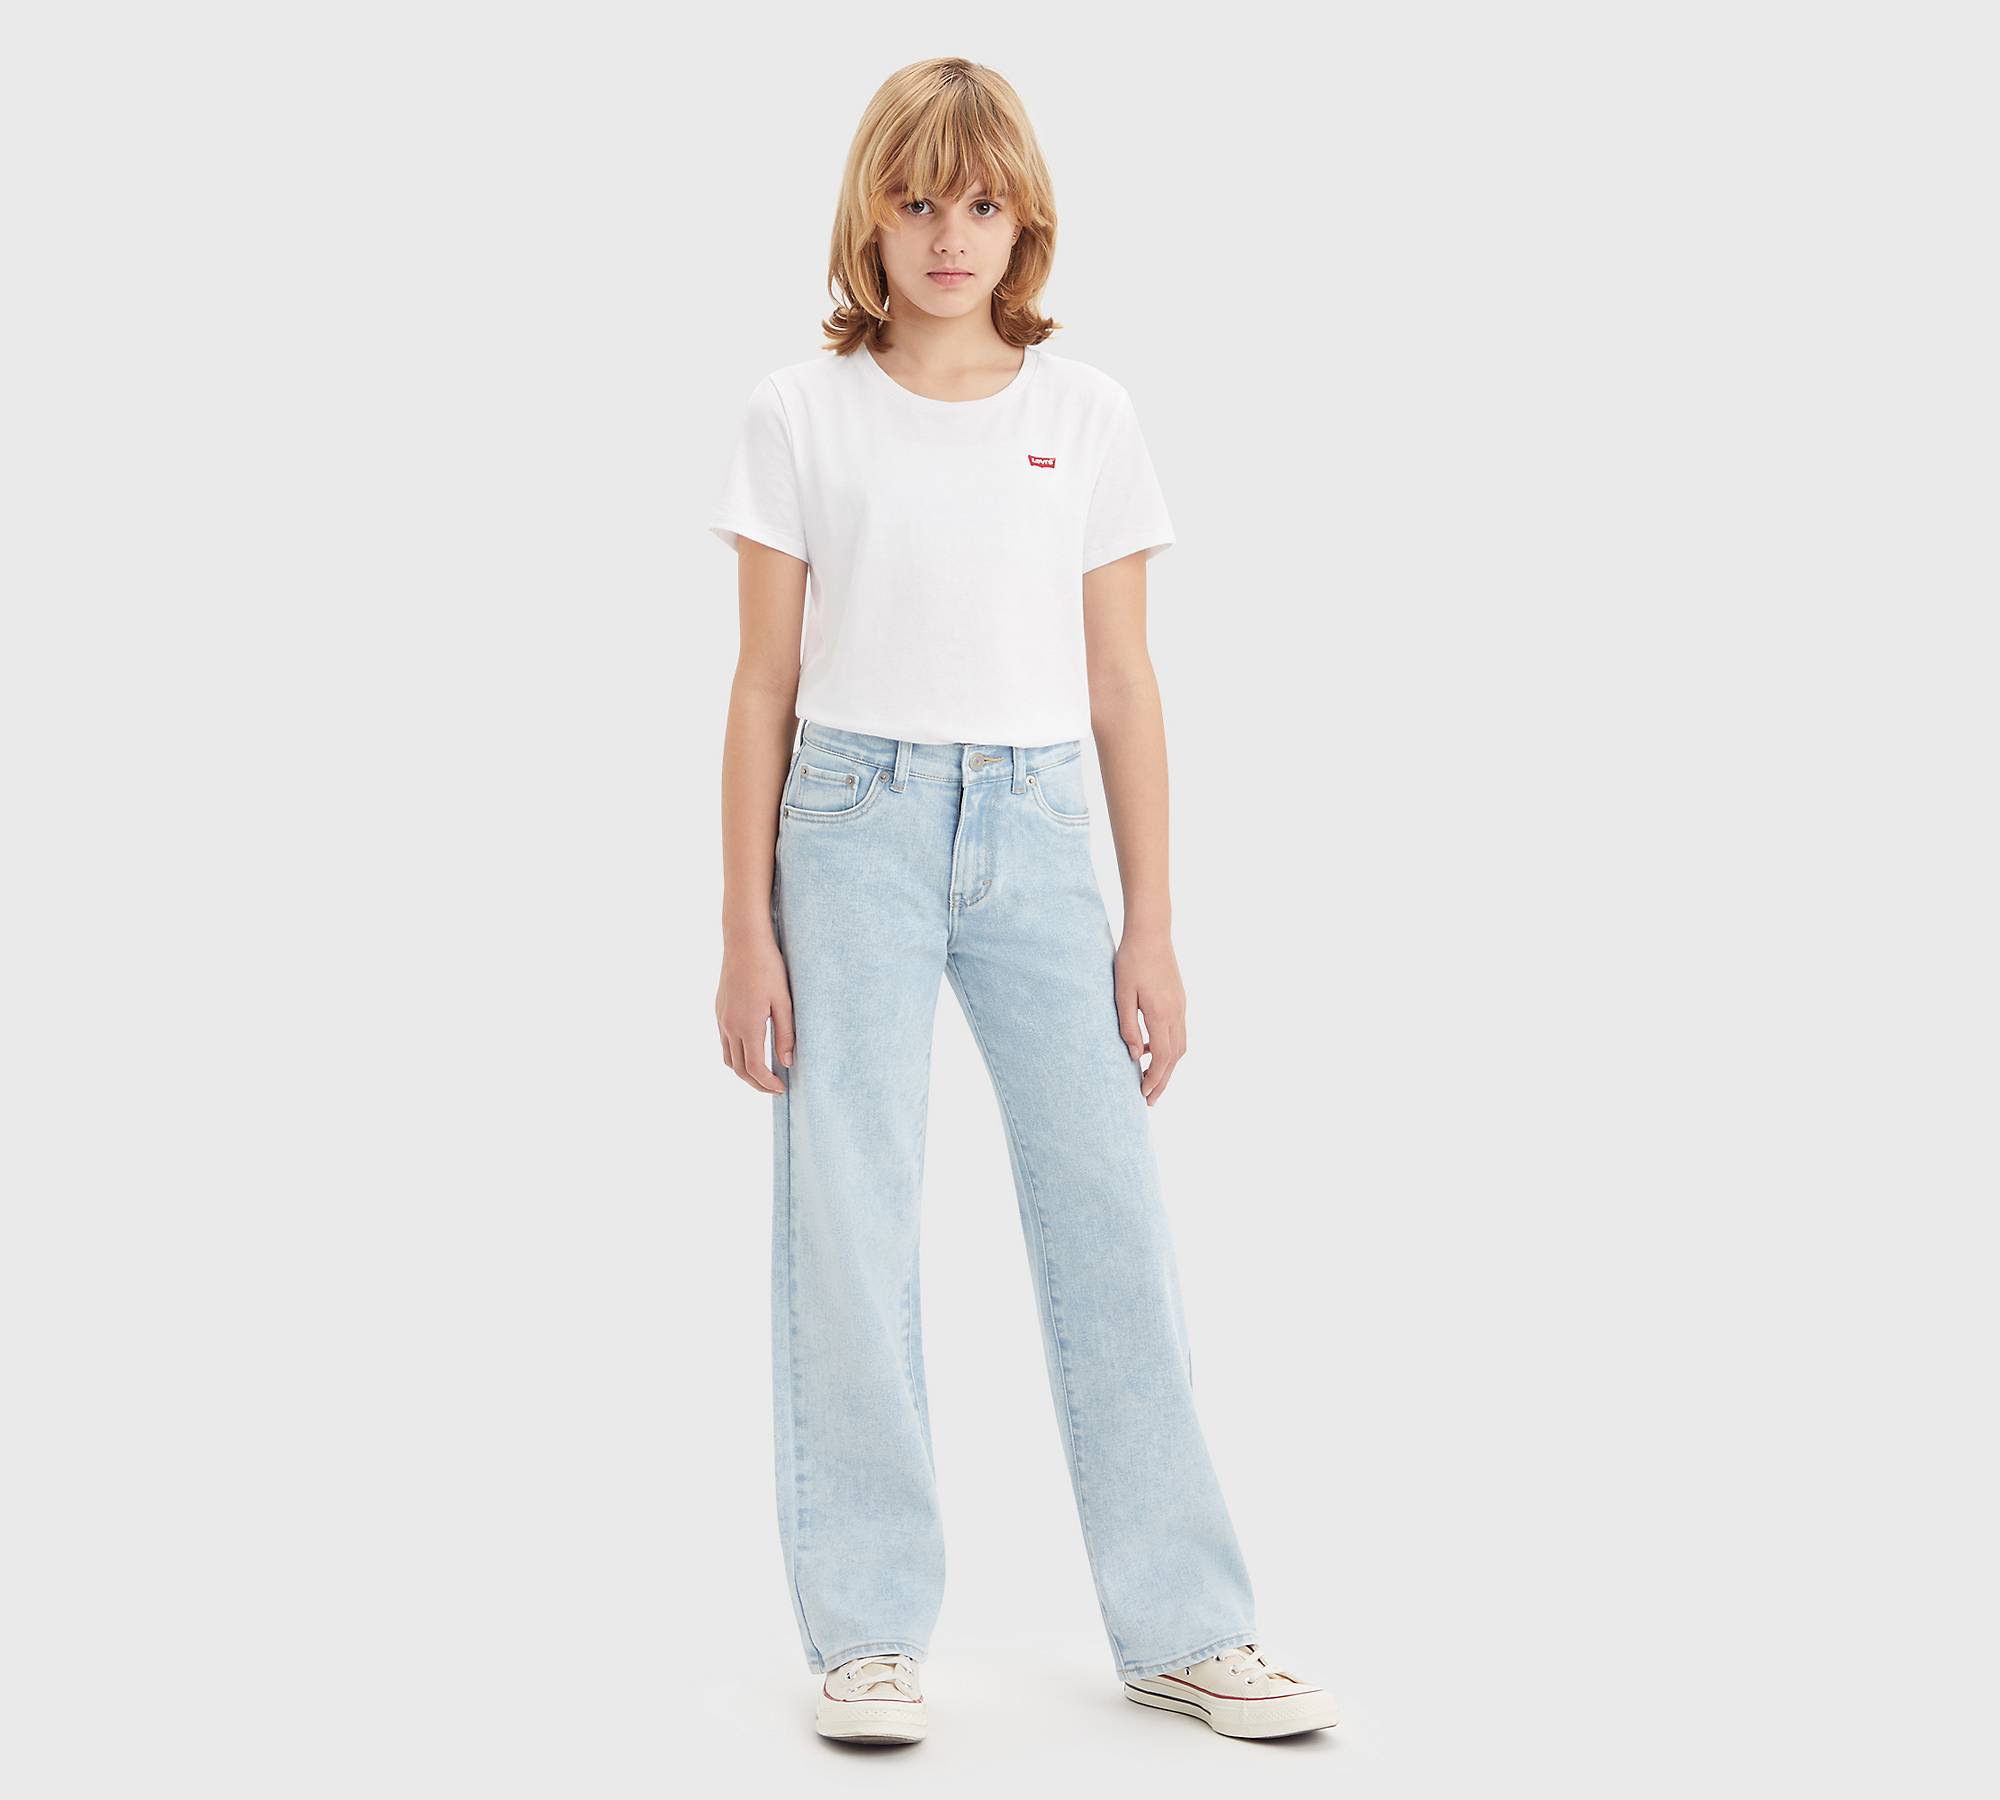 Jeans para adolescentes de pernera ancha 1